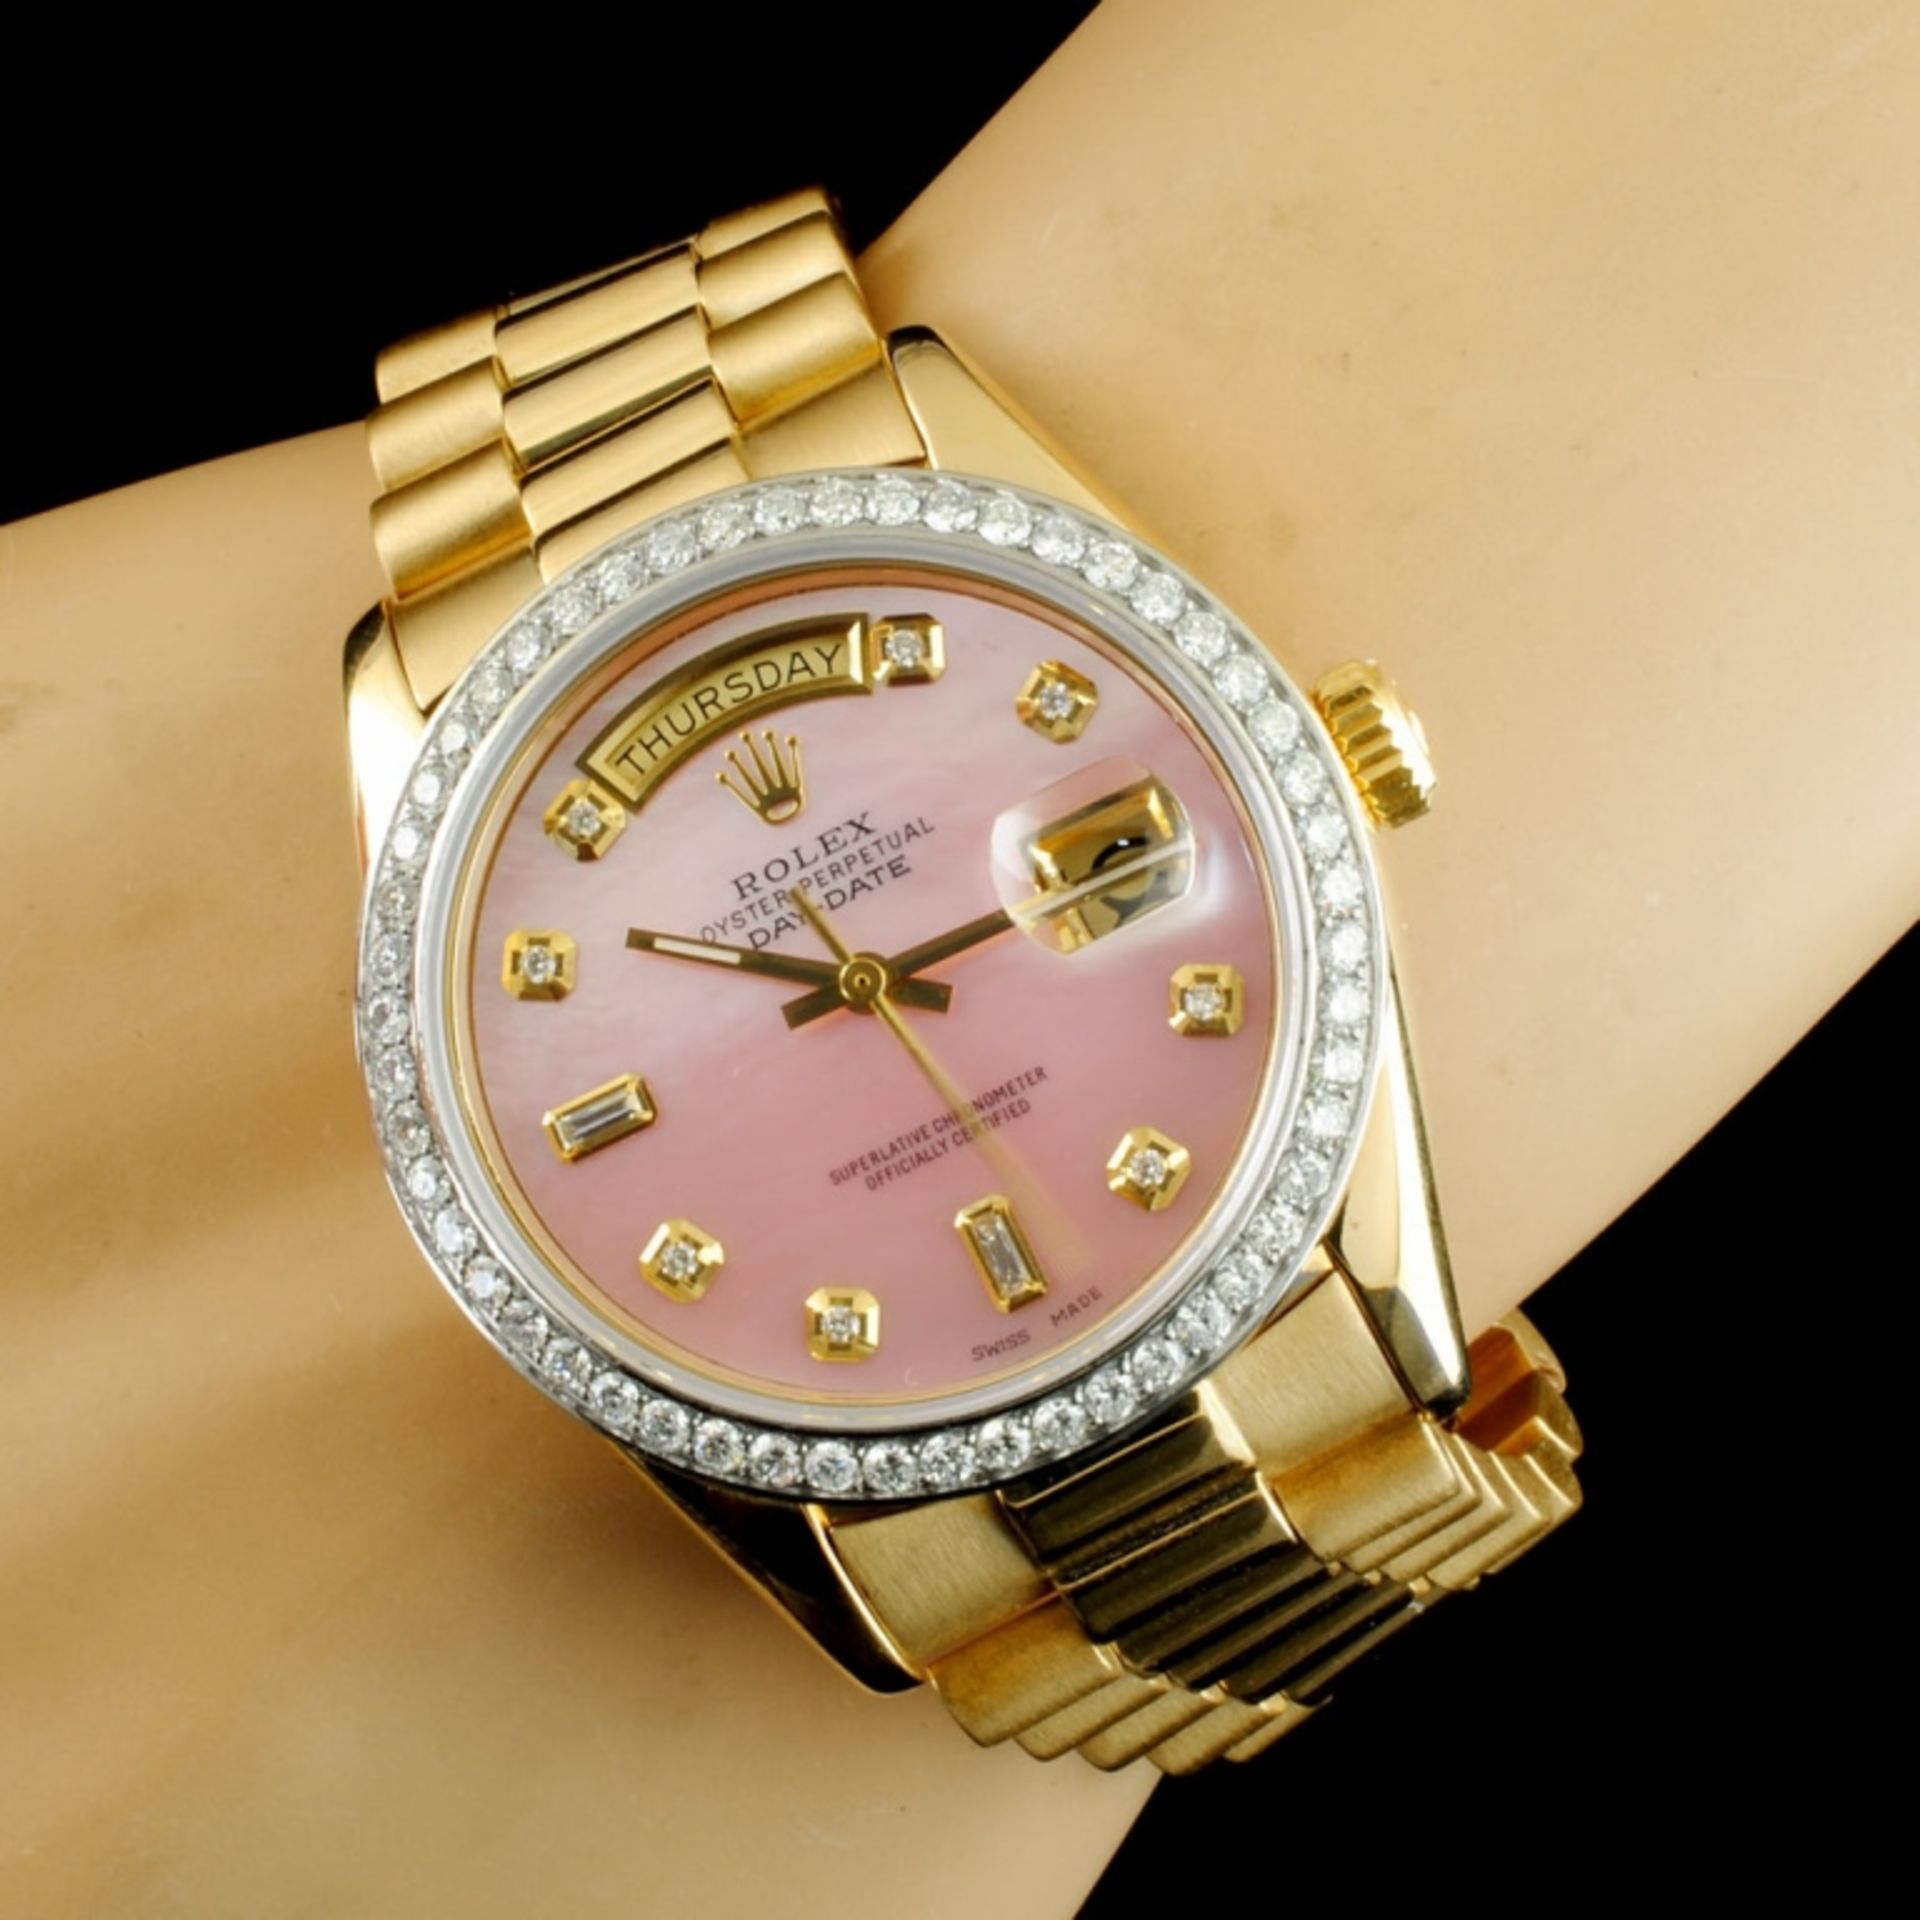 Rolex Day-Date 18K YG 1.35ct Diamond Wristwatch - Image 3 of 5